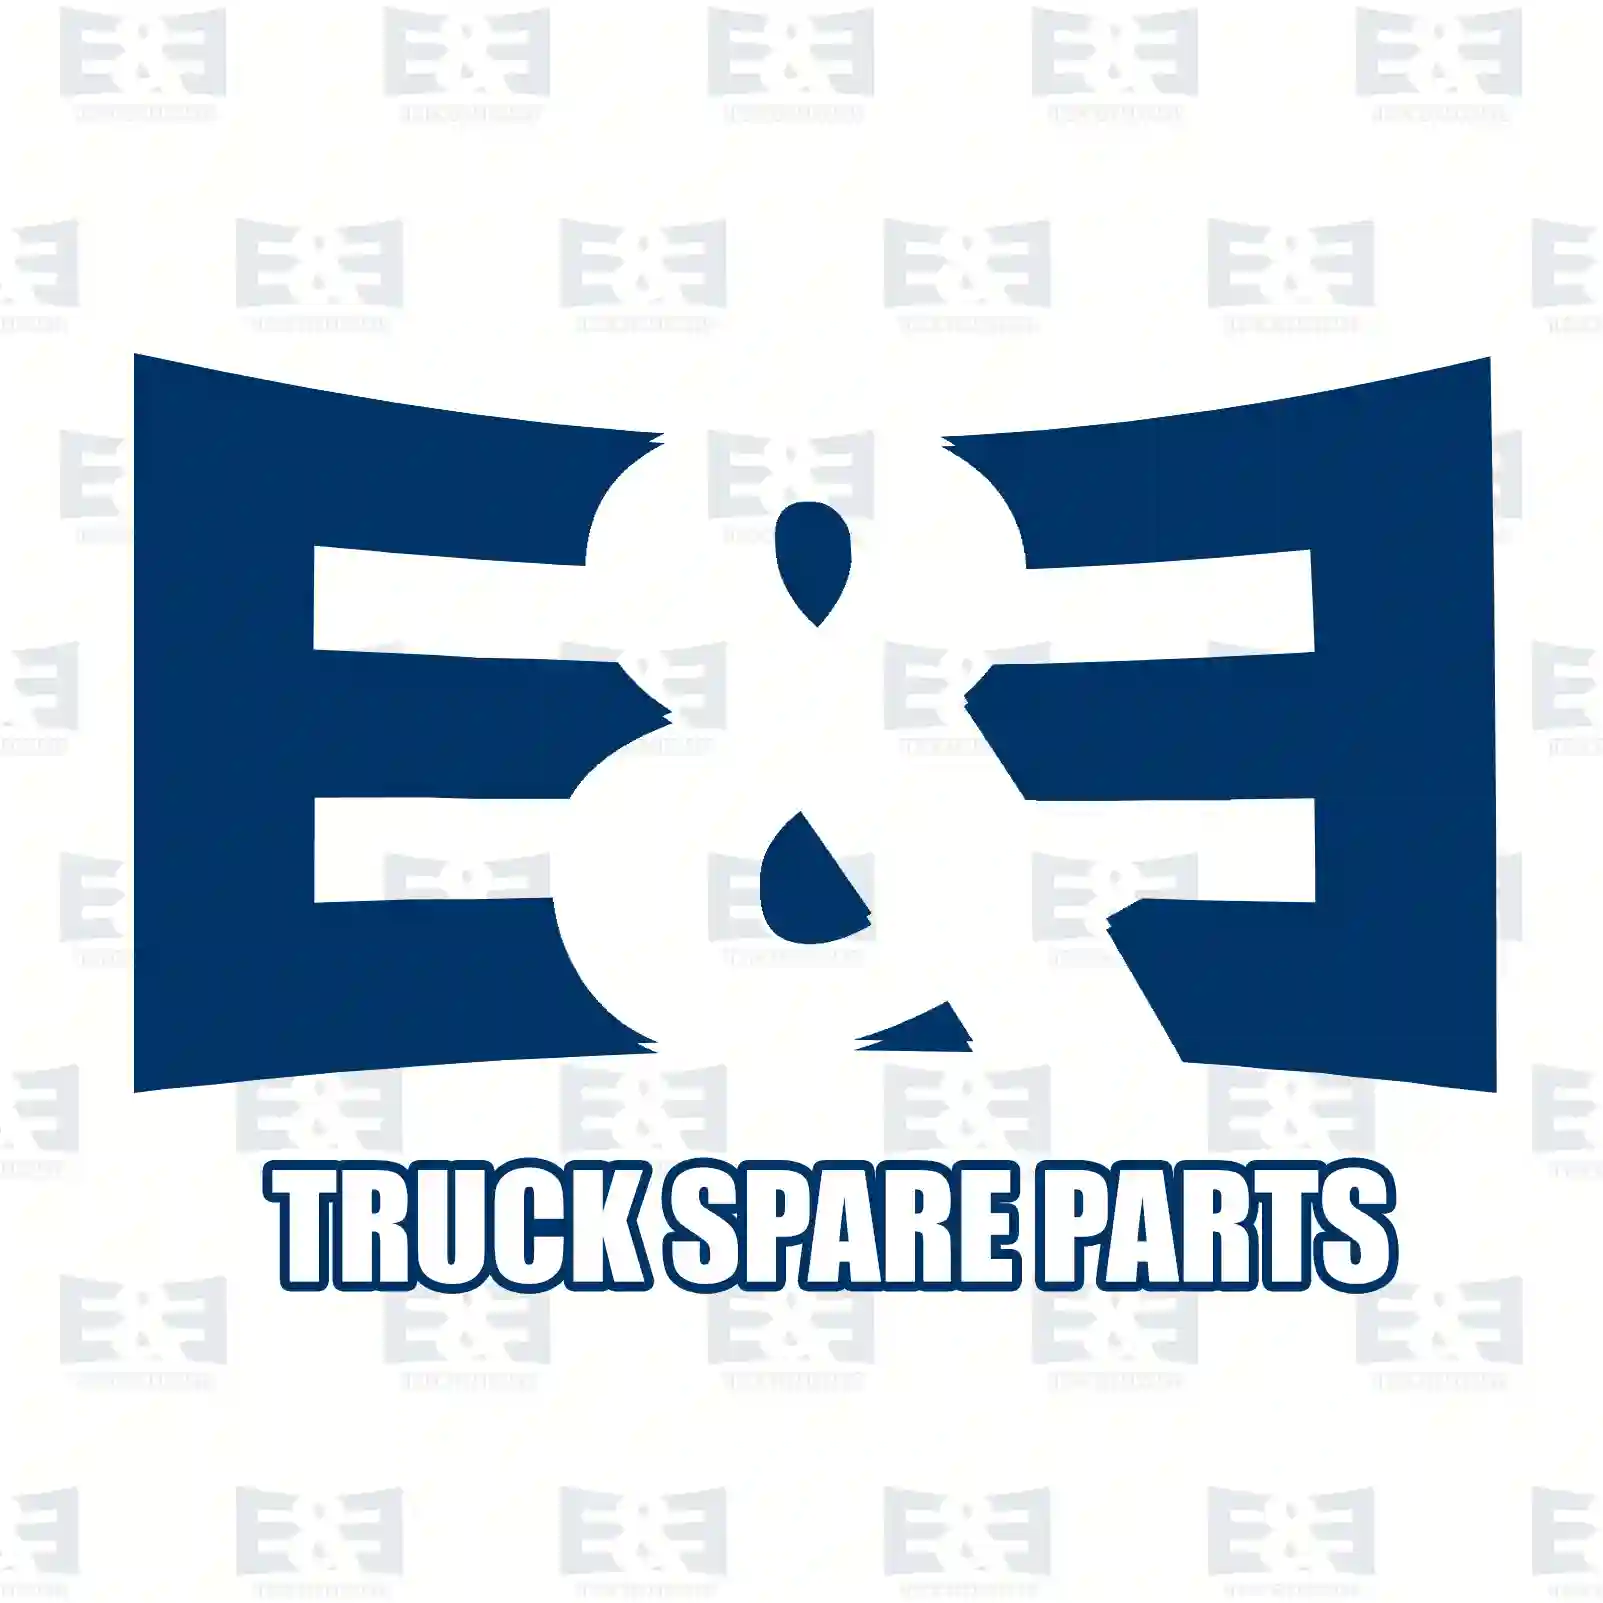 Compressor, 2E2296792, 51540007058, 5154 ||  2E2296792 E&E Truck Spare Parts | Truck Spare Parts, Auotomotive Spare Parts Compressor, 2E2296792, 51540007058, 5154 ||  2E2296792 E&E Truck Spare Parts | Truck Spare Parts, Auotomotive Spare Parts